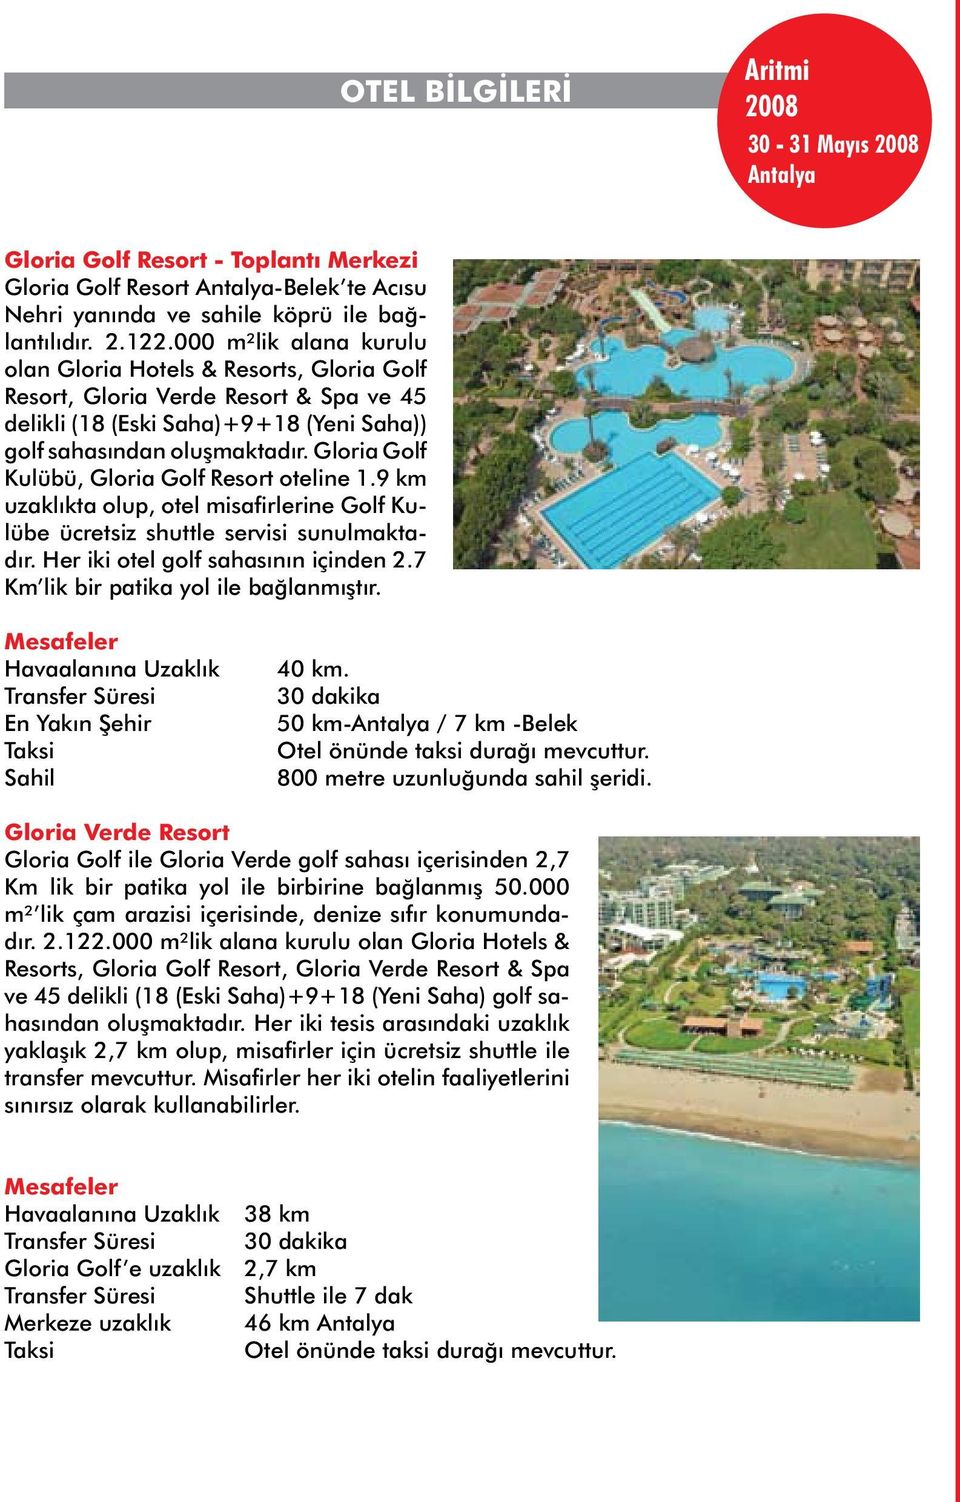 Gloria Golf Kulübü, Gloria Golf Resort oteline 1.9 km uzaklıkta olup, otel misafirlerine Golf Kulübe ücretsiz shuttle servisi sunulmaktadır. Her iki otel golf sahasının içinden 2.